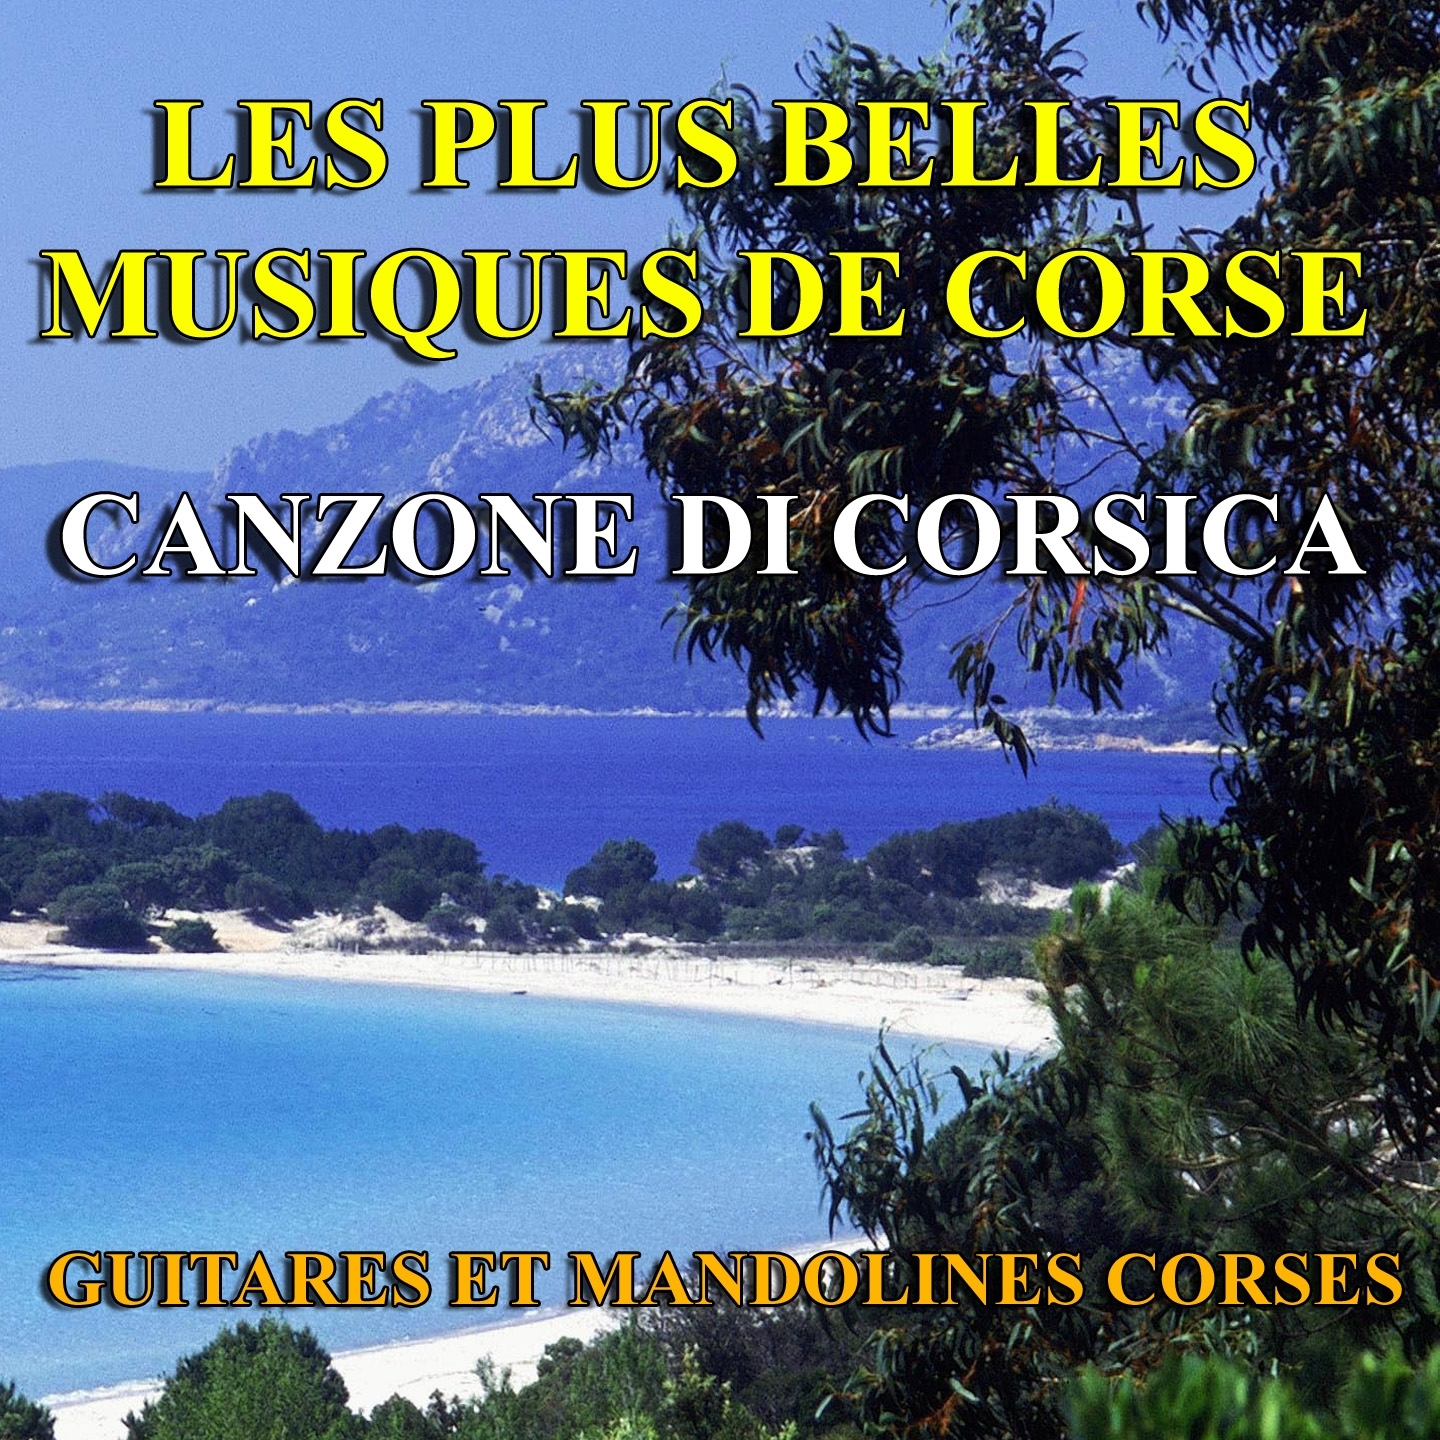 Les plus belles musiques de Corse (Canzone di Corsica)